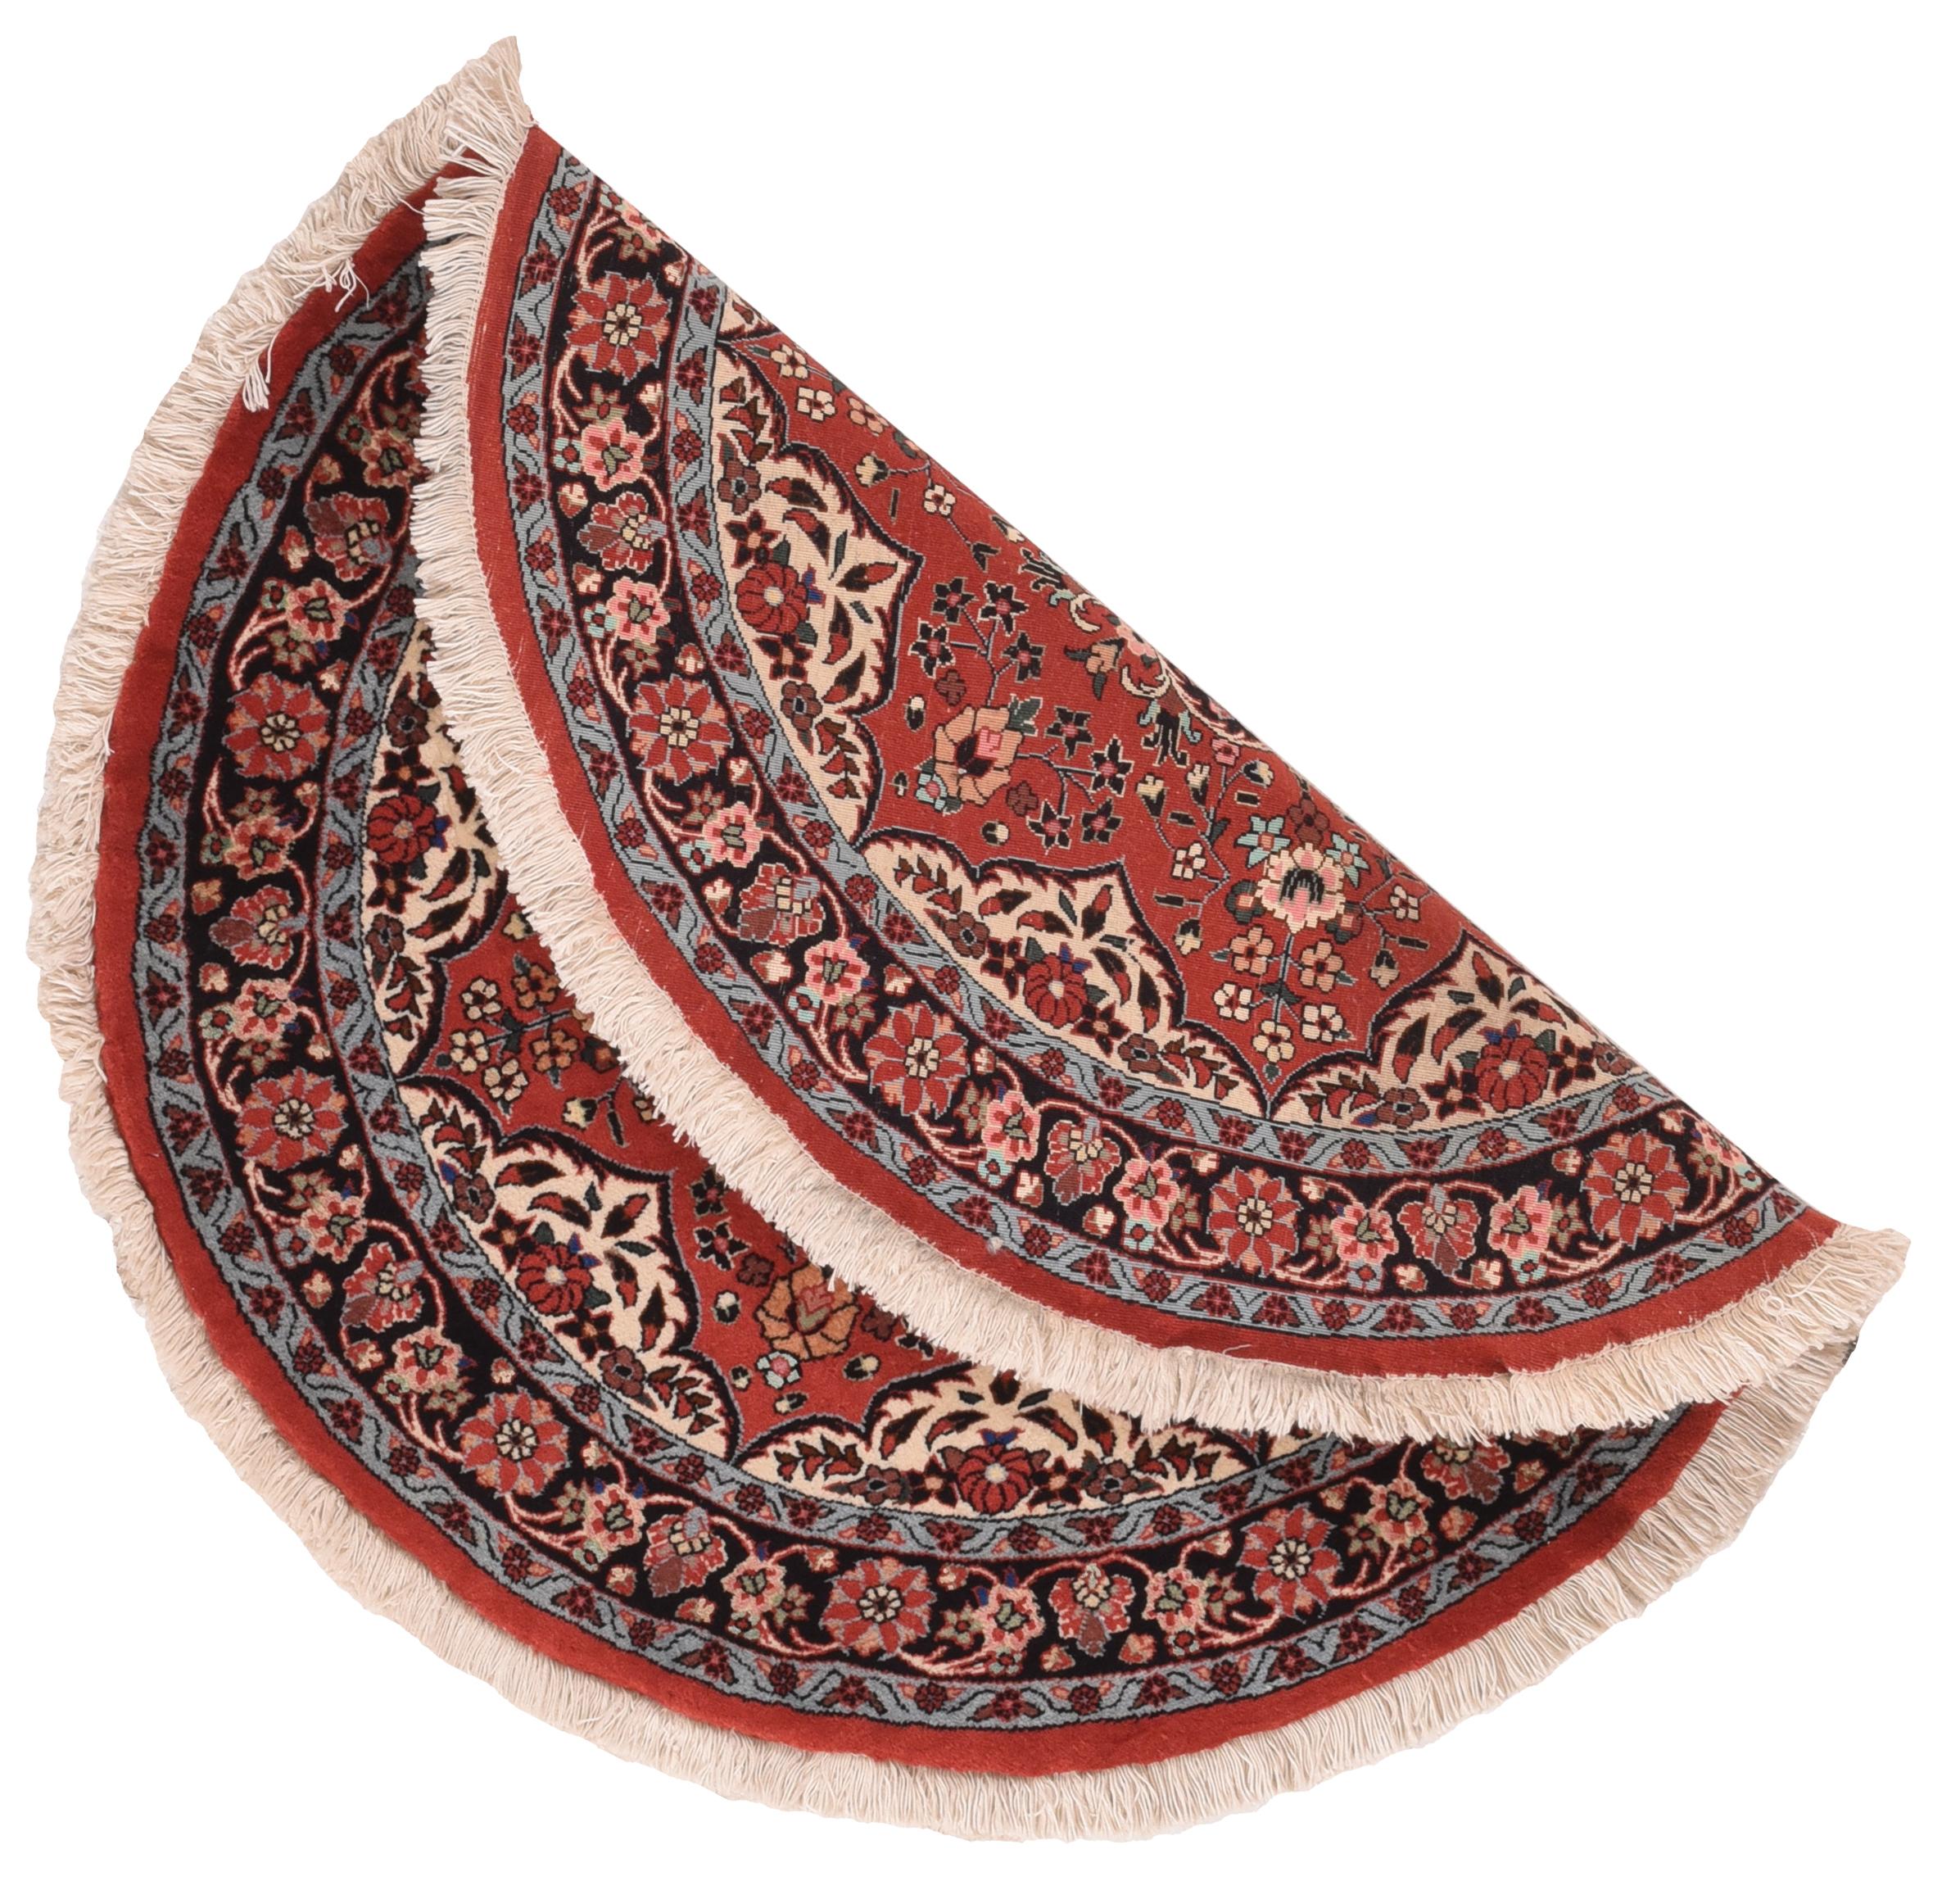 Vintage Bidjar Teppich 3'3'' x 3'3''. Runde oder ovale Teppiche werden auf normalen quadratischen oder rechteckigen Webstühlen gewebt. Dieses gut gewebte Exemplar zeigt ein achtzackiges rotes sternförmiges Feld, in dessen Mitte ein marineblaues